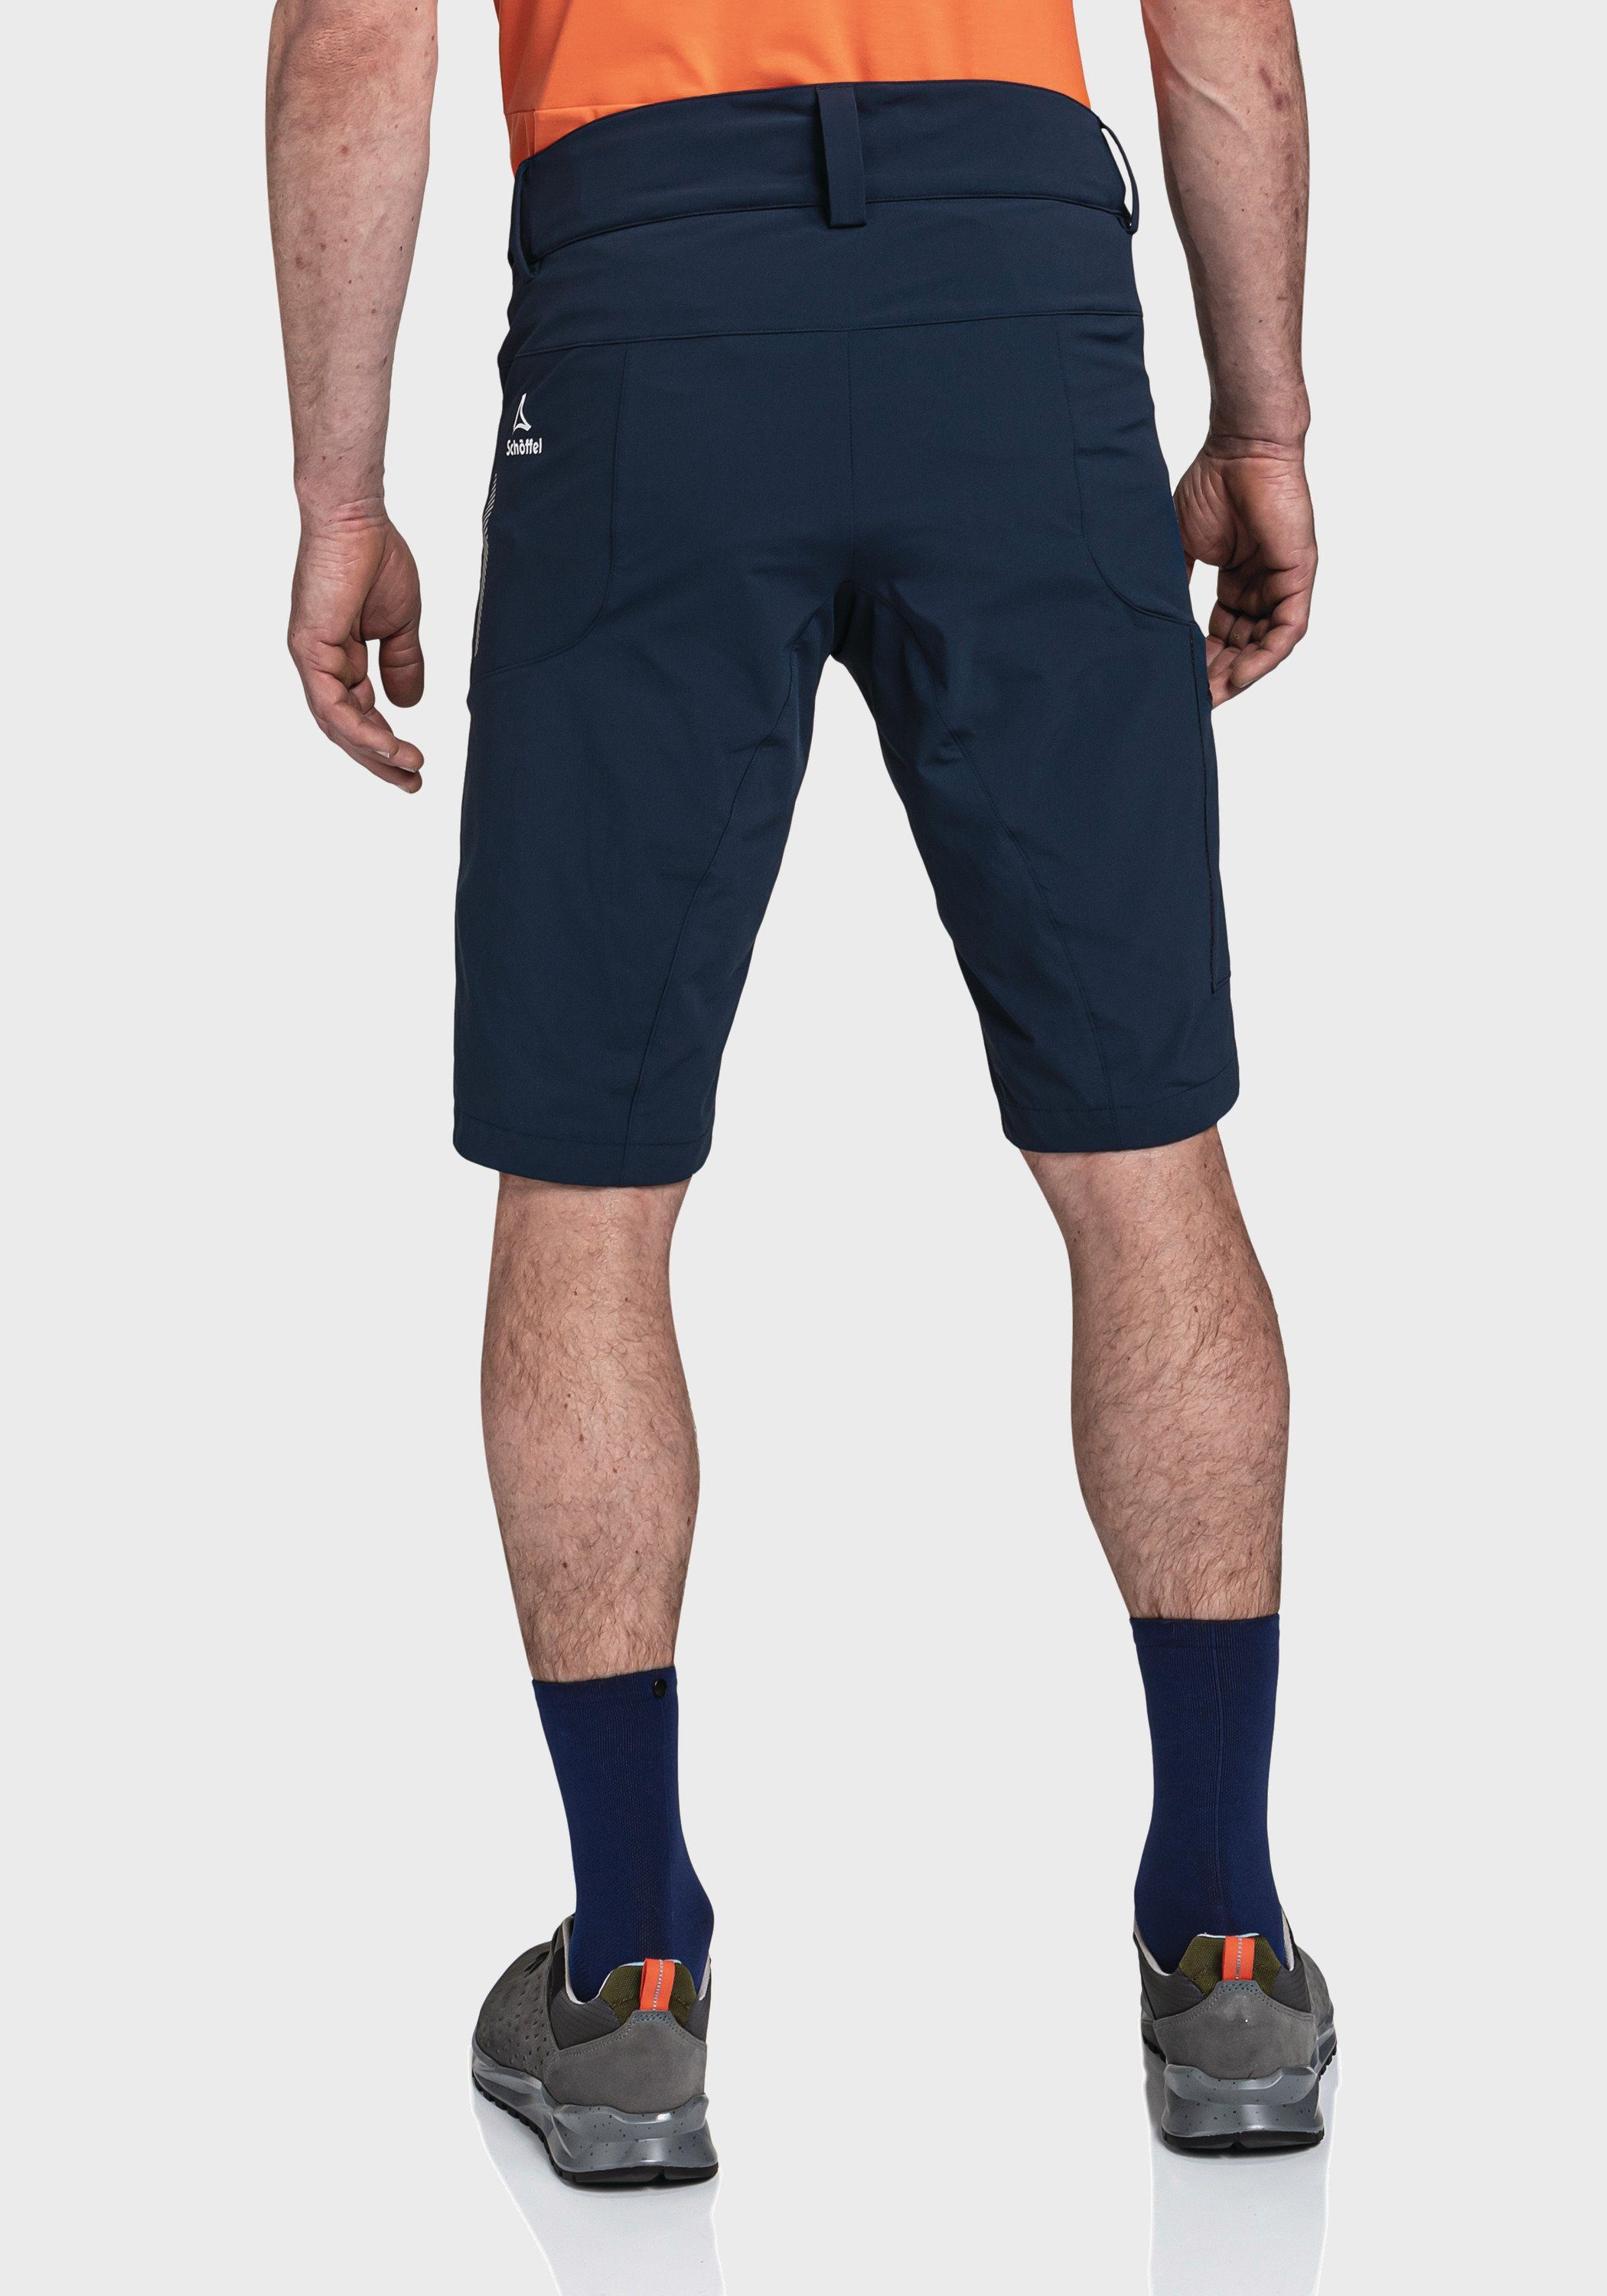 Shorts Schöffel blau Algarve M Shorts